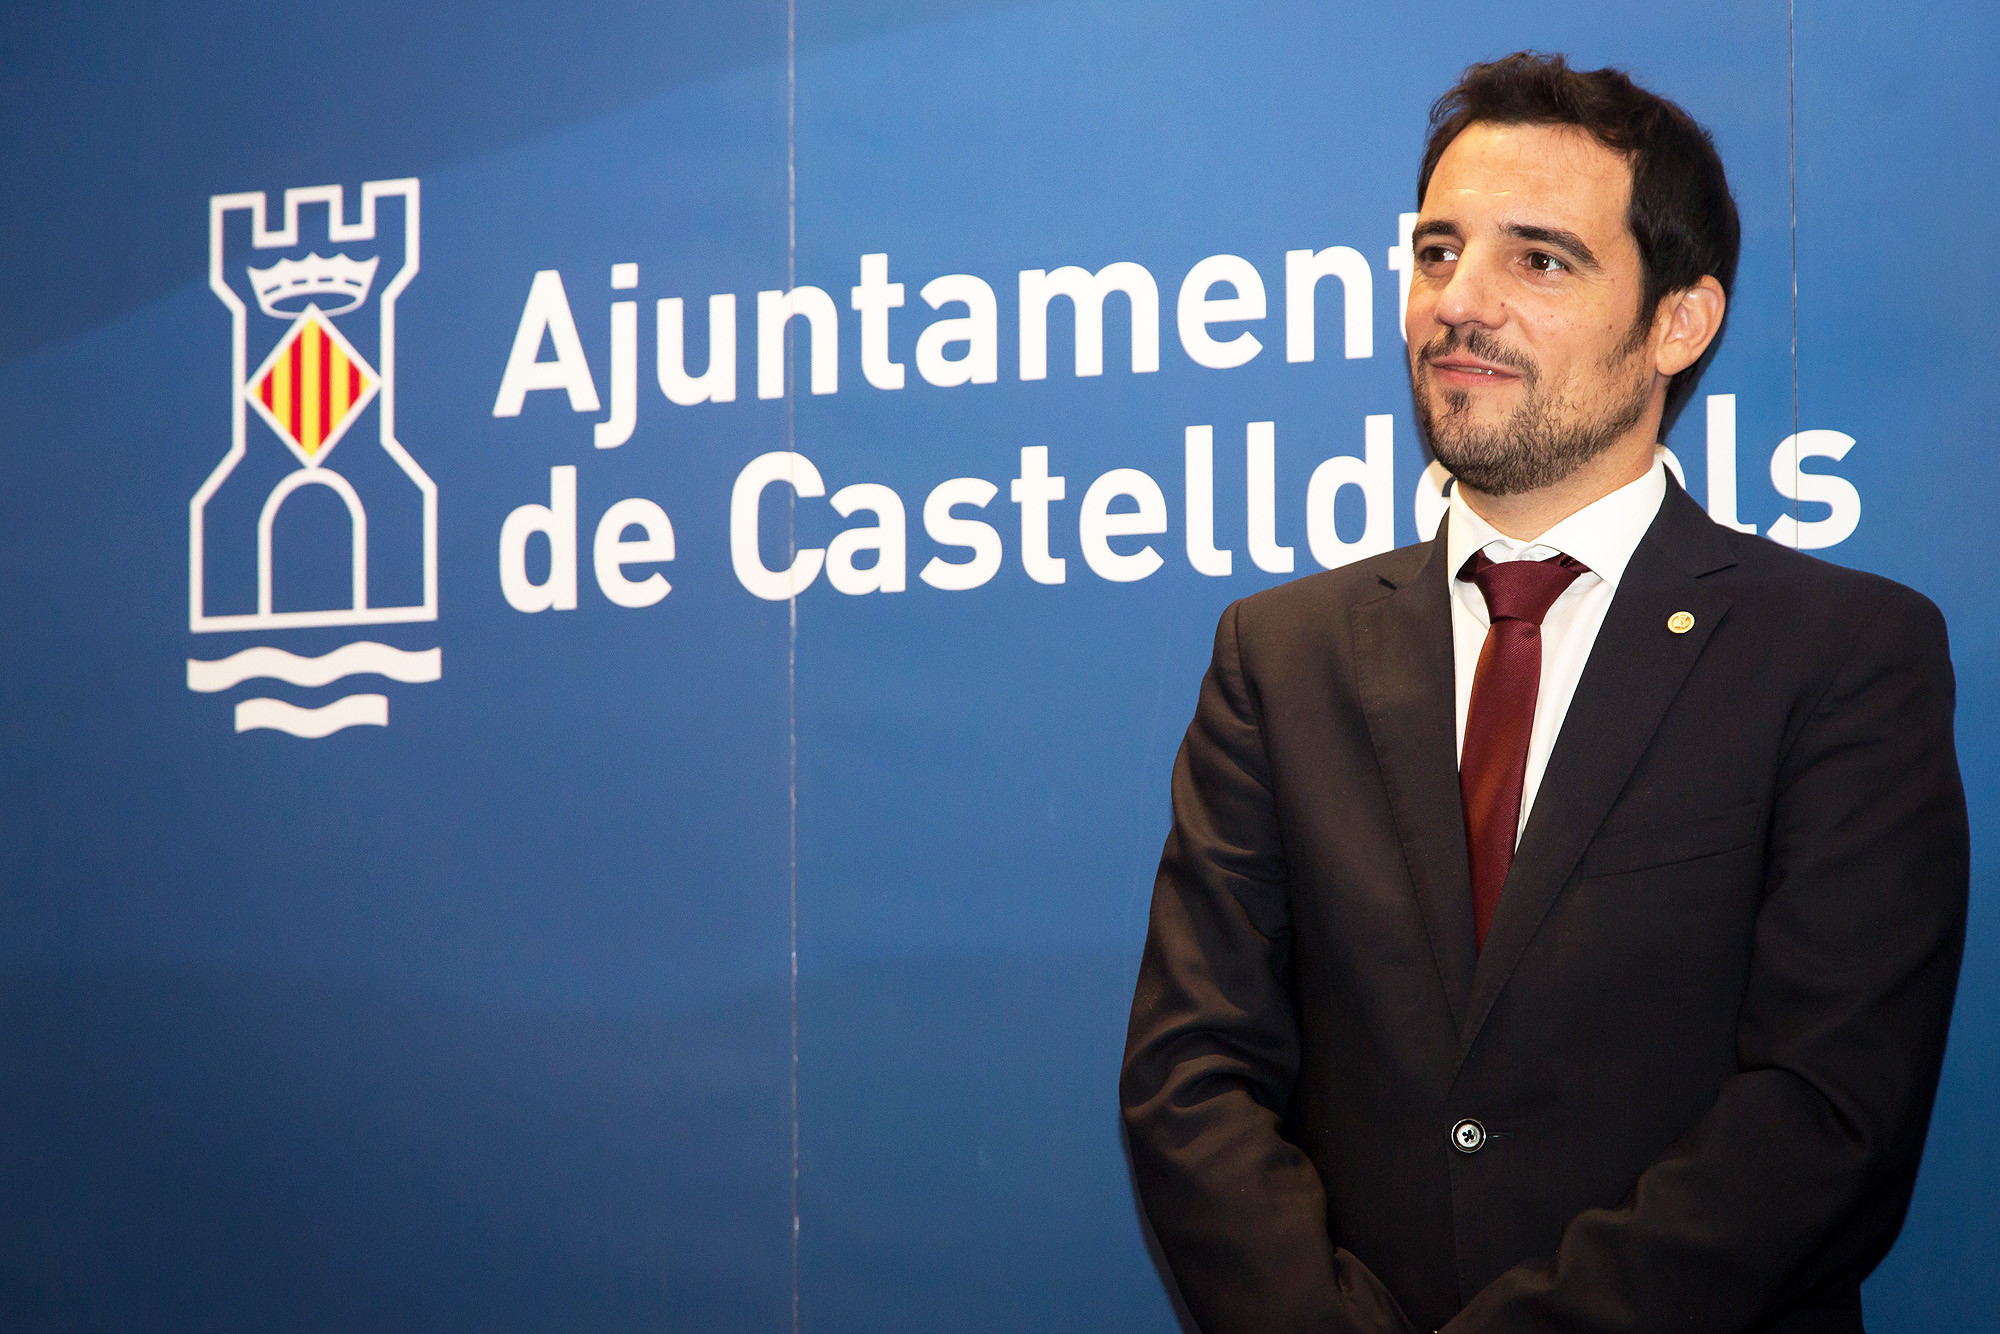 L’exalcalde i portaveu del PP a Castelldefels, Manu Reyes, ha criticat el comunicat emès pel govern municipal de Castelldefels